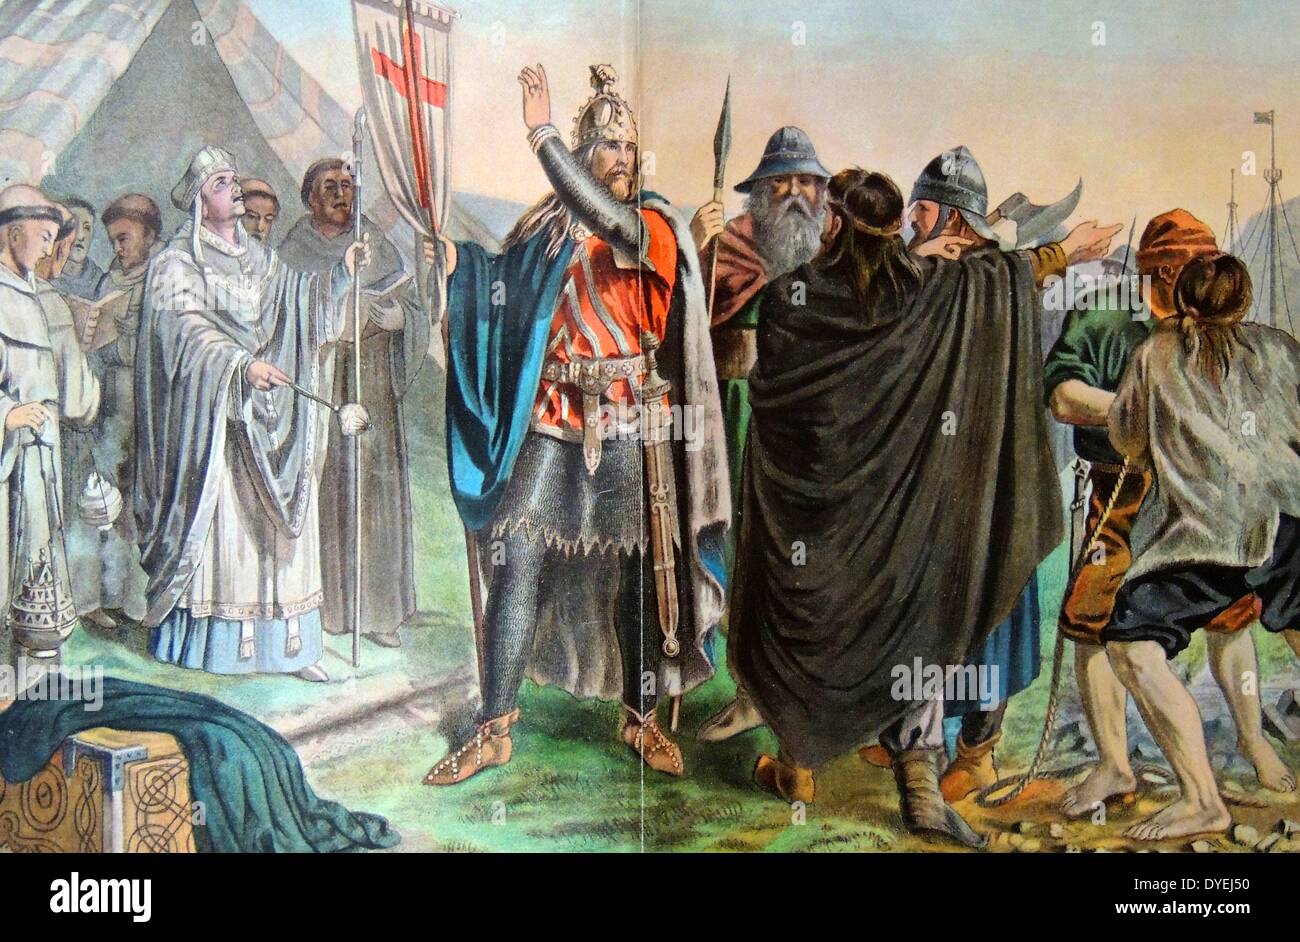 Olaf Tryggvason (960-1000) war der König von Norwegen, von 995 bis 1000. Er war der Urenkel von Harald Fairhair, erster König von Norwegen. Olaf spielte eine wichtige Rolle in der oft gewaltsame Bekehrung der Skandinavier zum Christentum. wurde er König von Norwegen in 995 Stockfoto